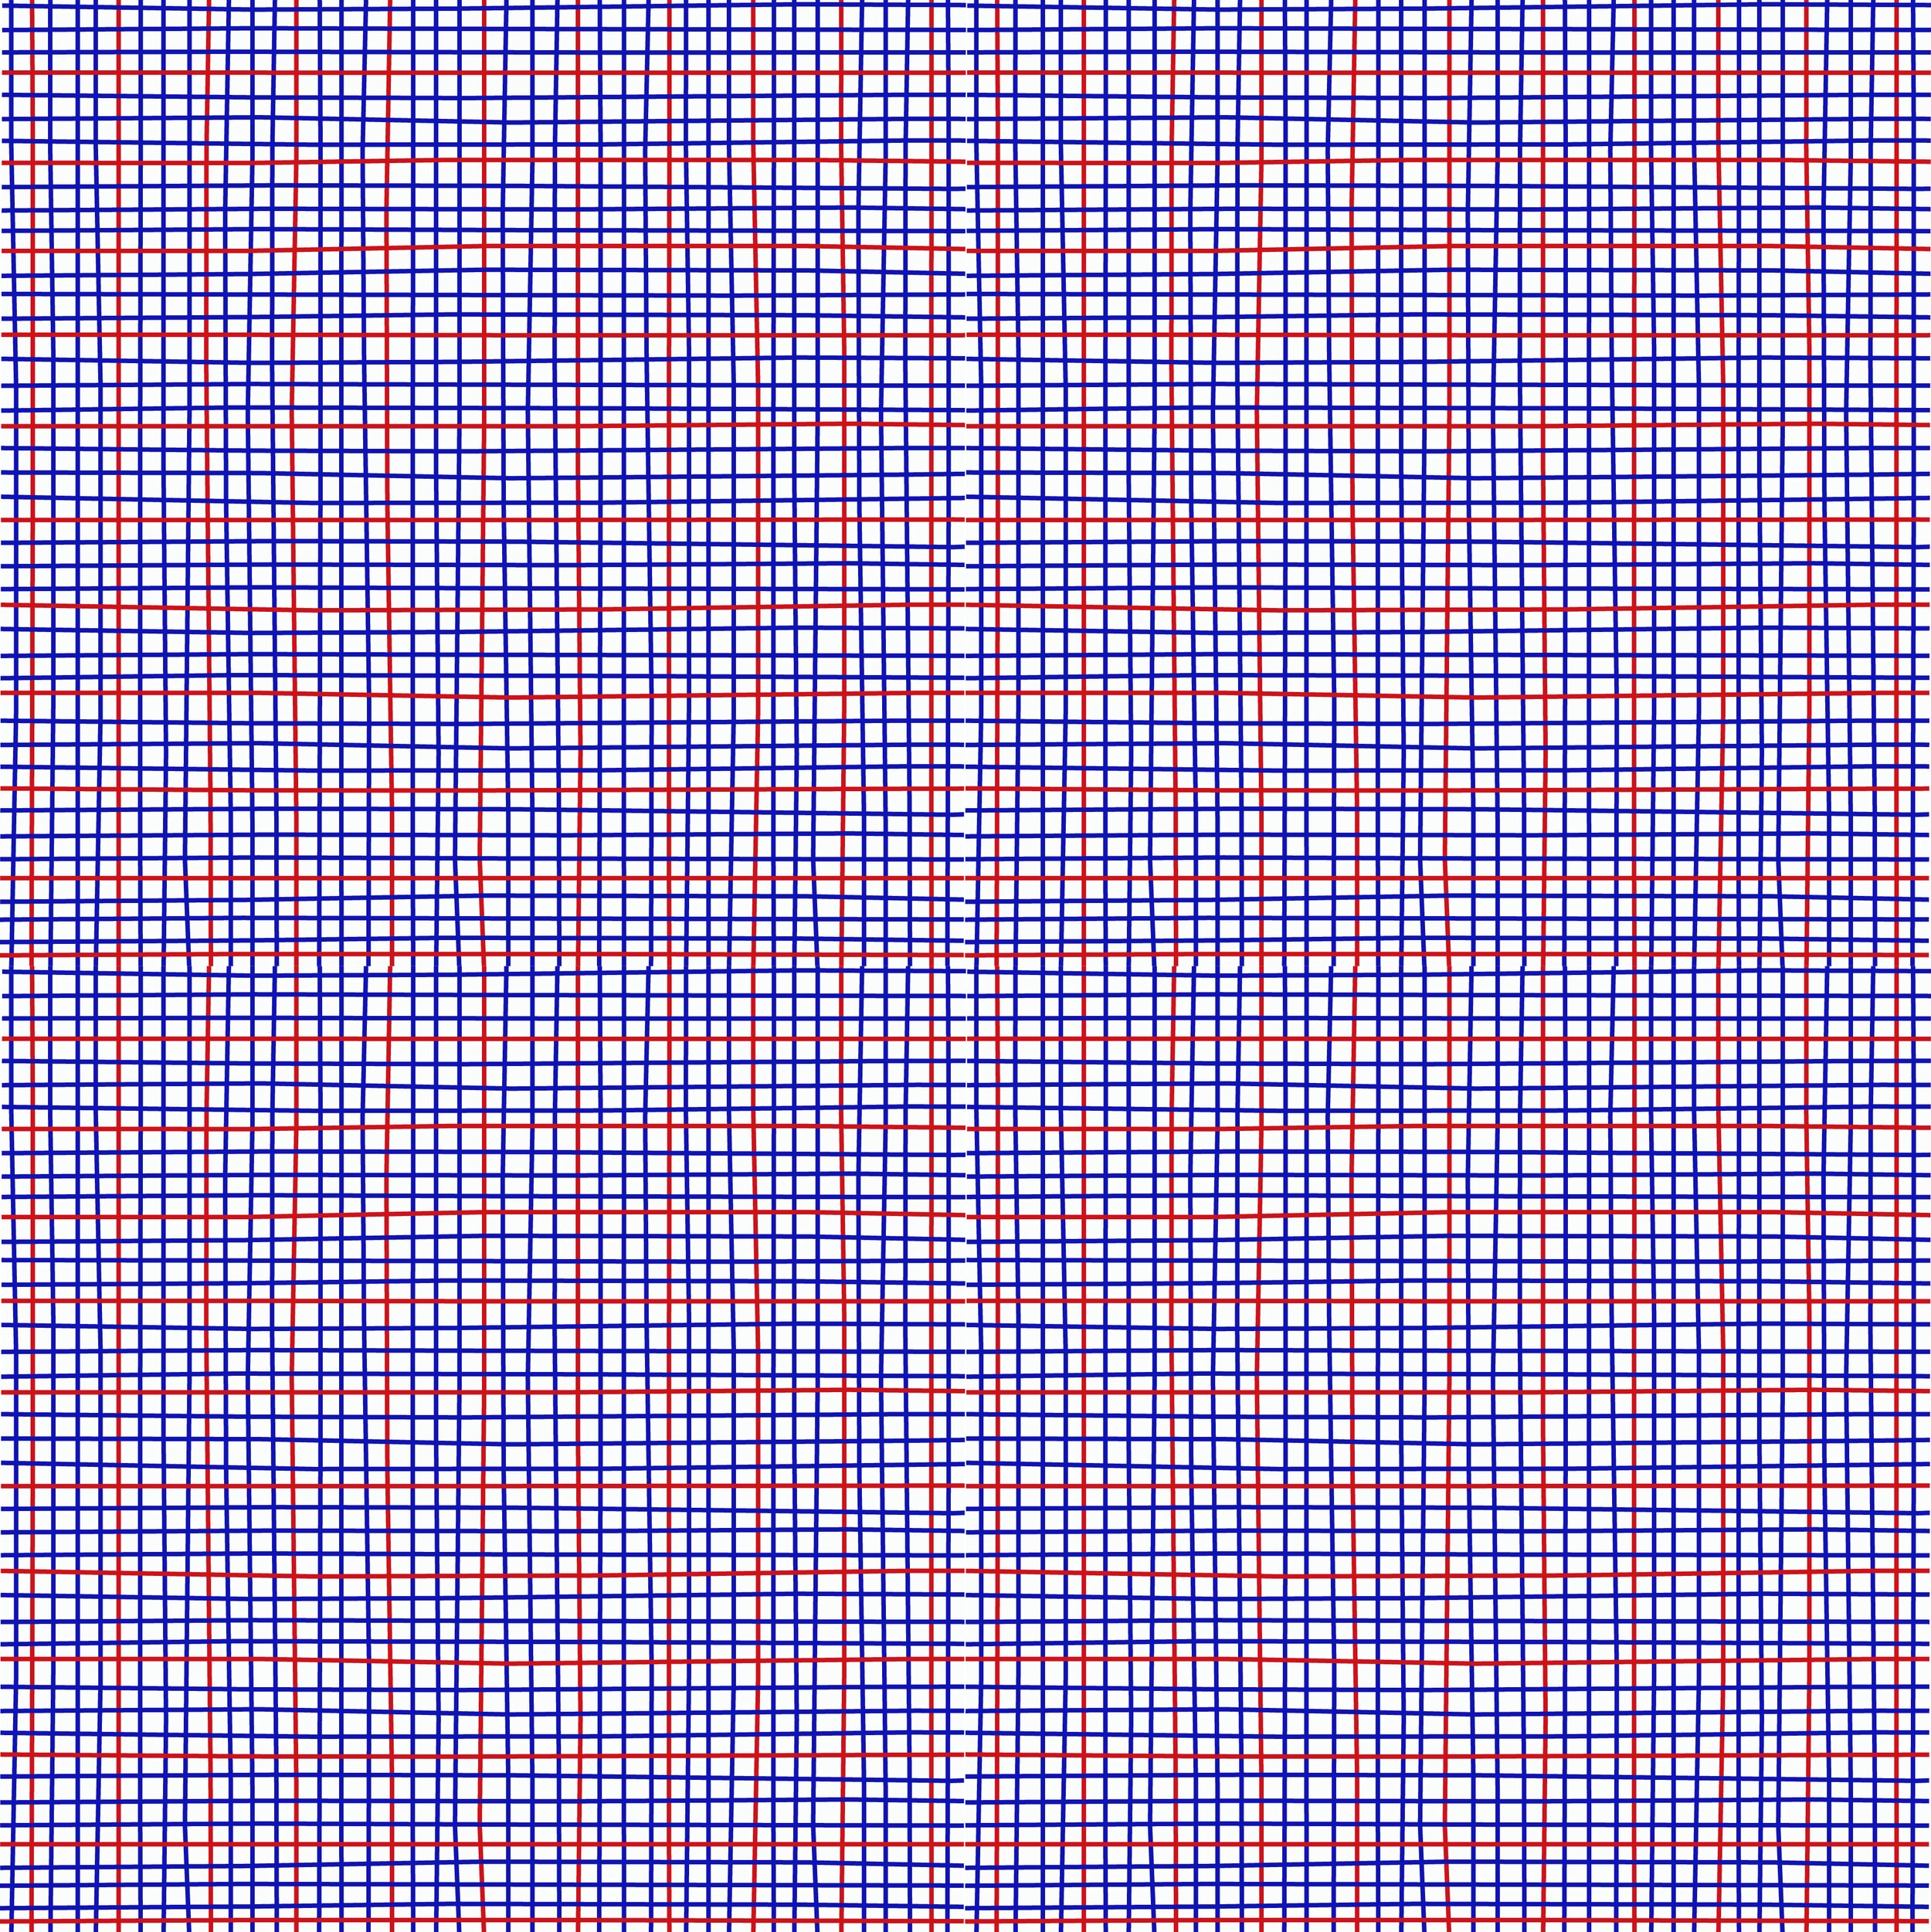 Ewe Tartan shown 4 tiles x 15 x 15 cm